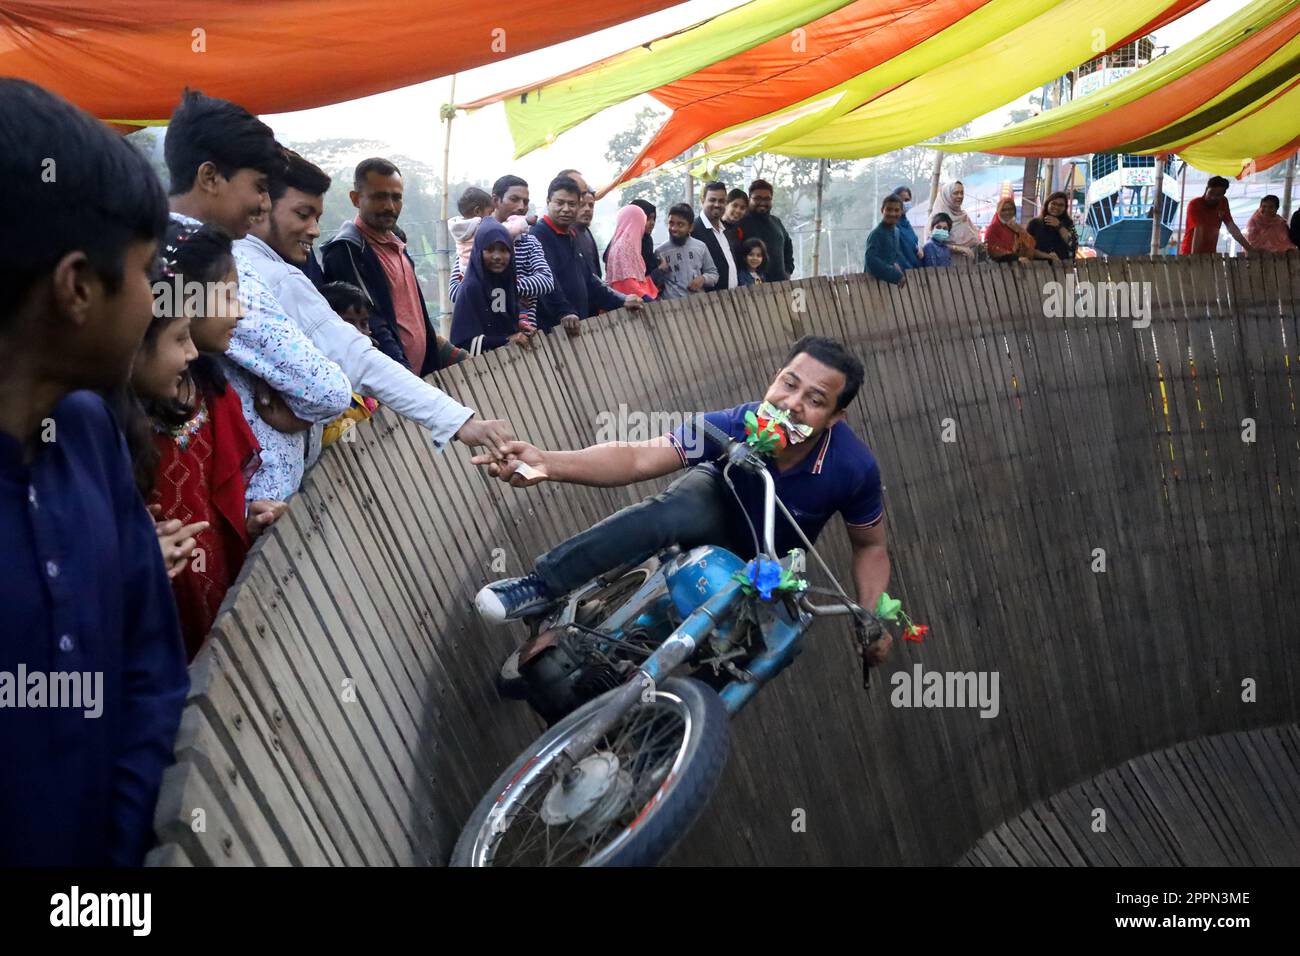 Manikgonj, Manikgonj, Bangladesh. 24th avril 2023. Un homme conduisant une moto a atteint pour de l'argent tout en réalisant des cascades en conduisant des motos sur un « mur de la mort » vertical à Manikgonj, Bangladesh. Les artistes voyagent sans équipement de protection à des vitesses allant jusqu'à 80 km/h afin que leur véhicule puisse s'équilibrer sur la planche en bois de 25 pieds de haut. Crédit : ZUMA Press, Inc./Alay Live News Banque D'Images